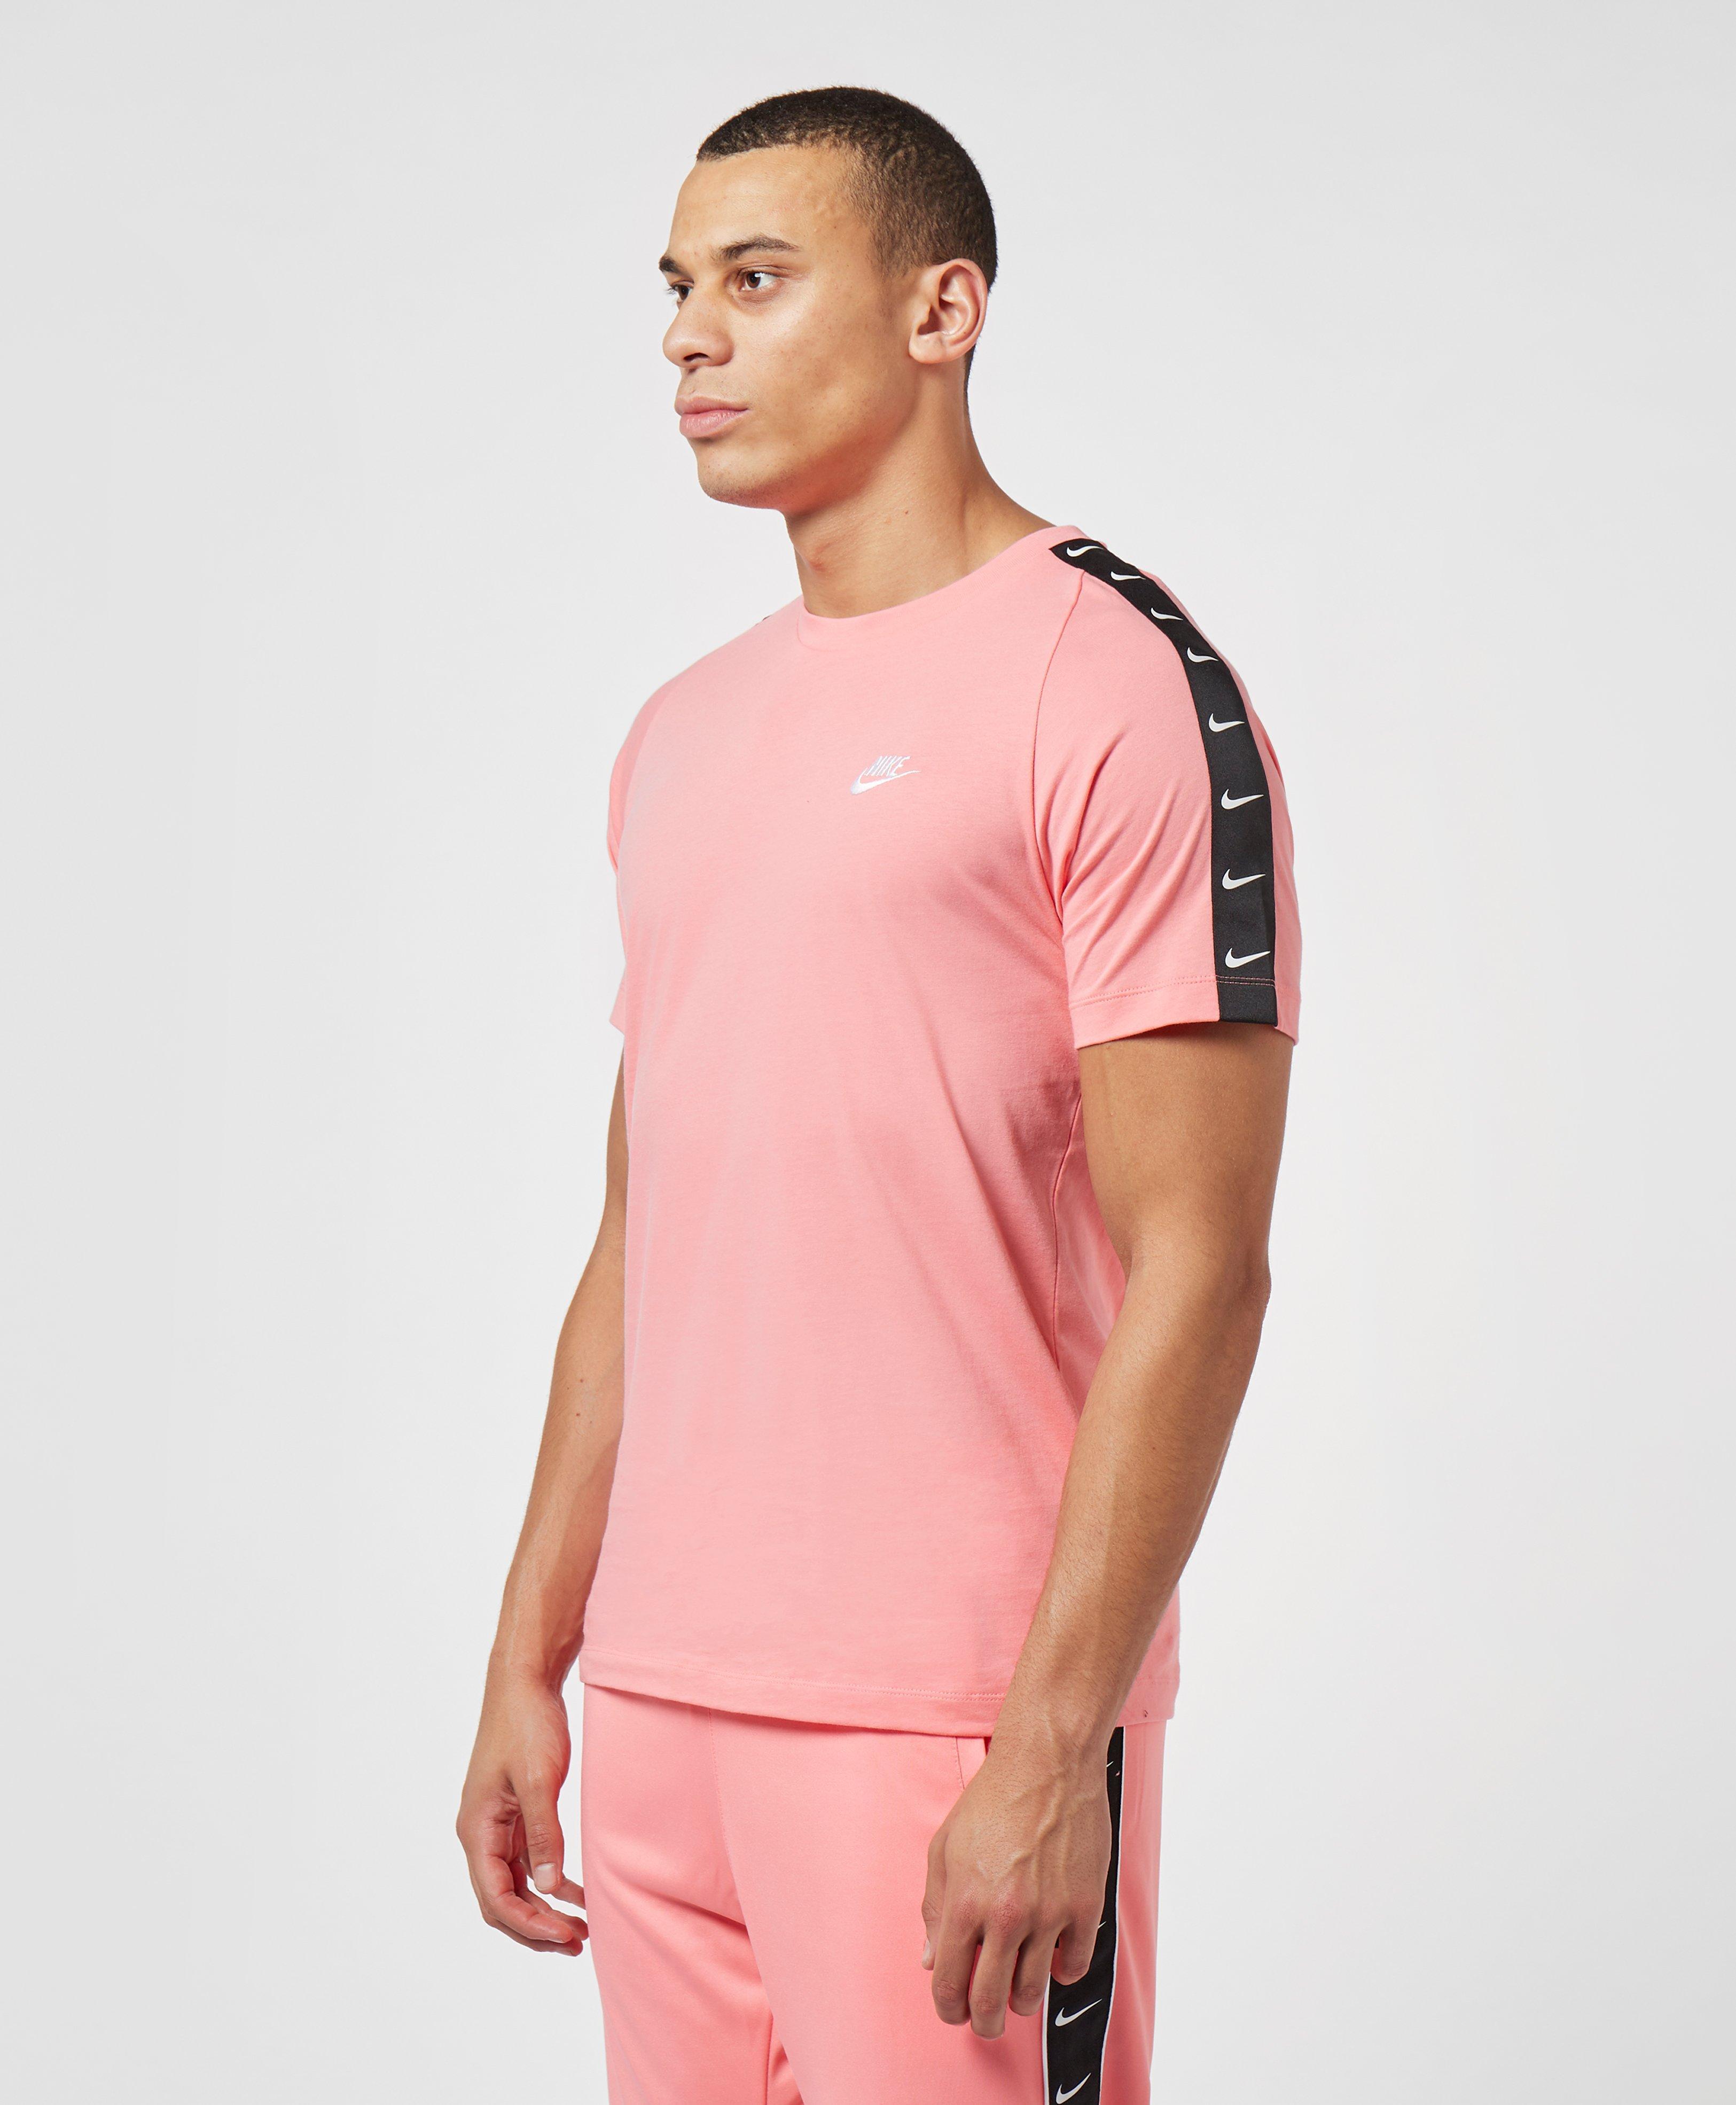 Camiseta Rosa Con Cinta Del Logo Nike De Hombre De Color, 44% OFF